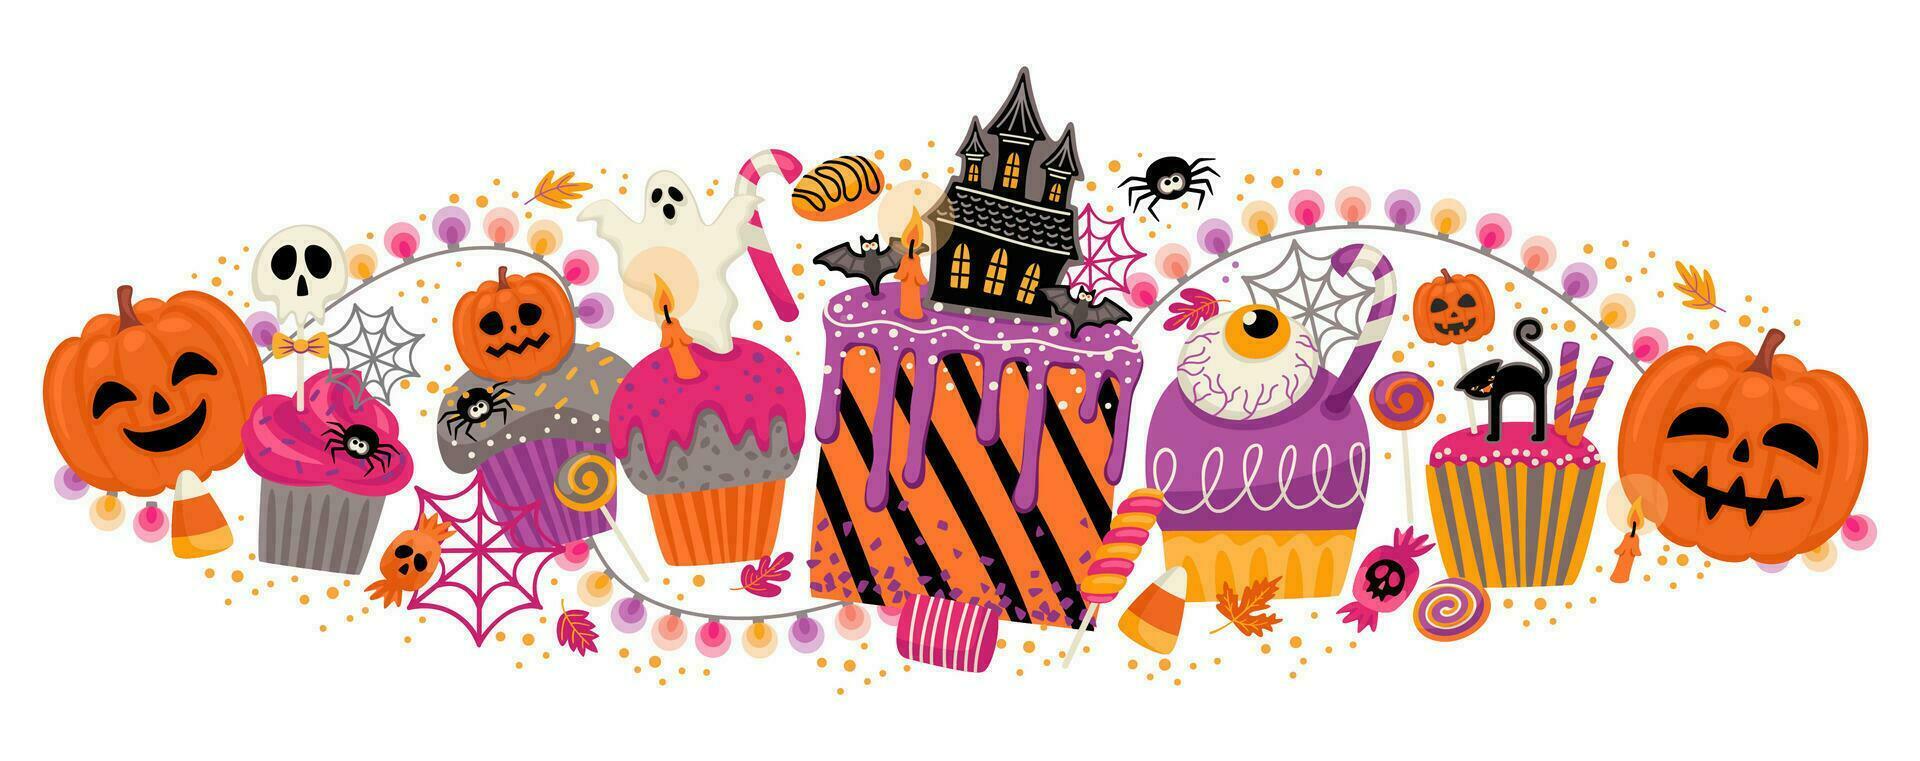 halloween illustration. dekorerad cupcakes, muffins, bakverk sötsaker godis vektor mall för baner, kort, affisch, webb och Övrig använda sig av